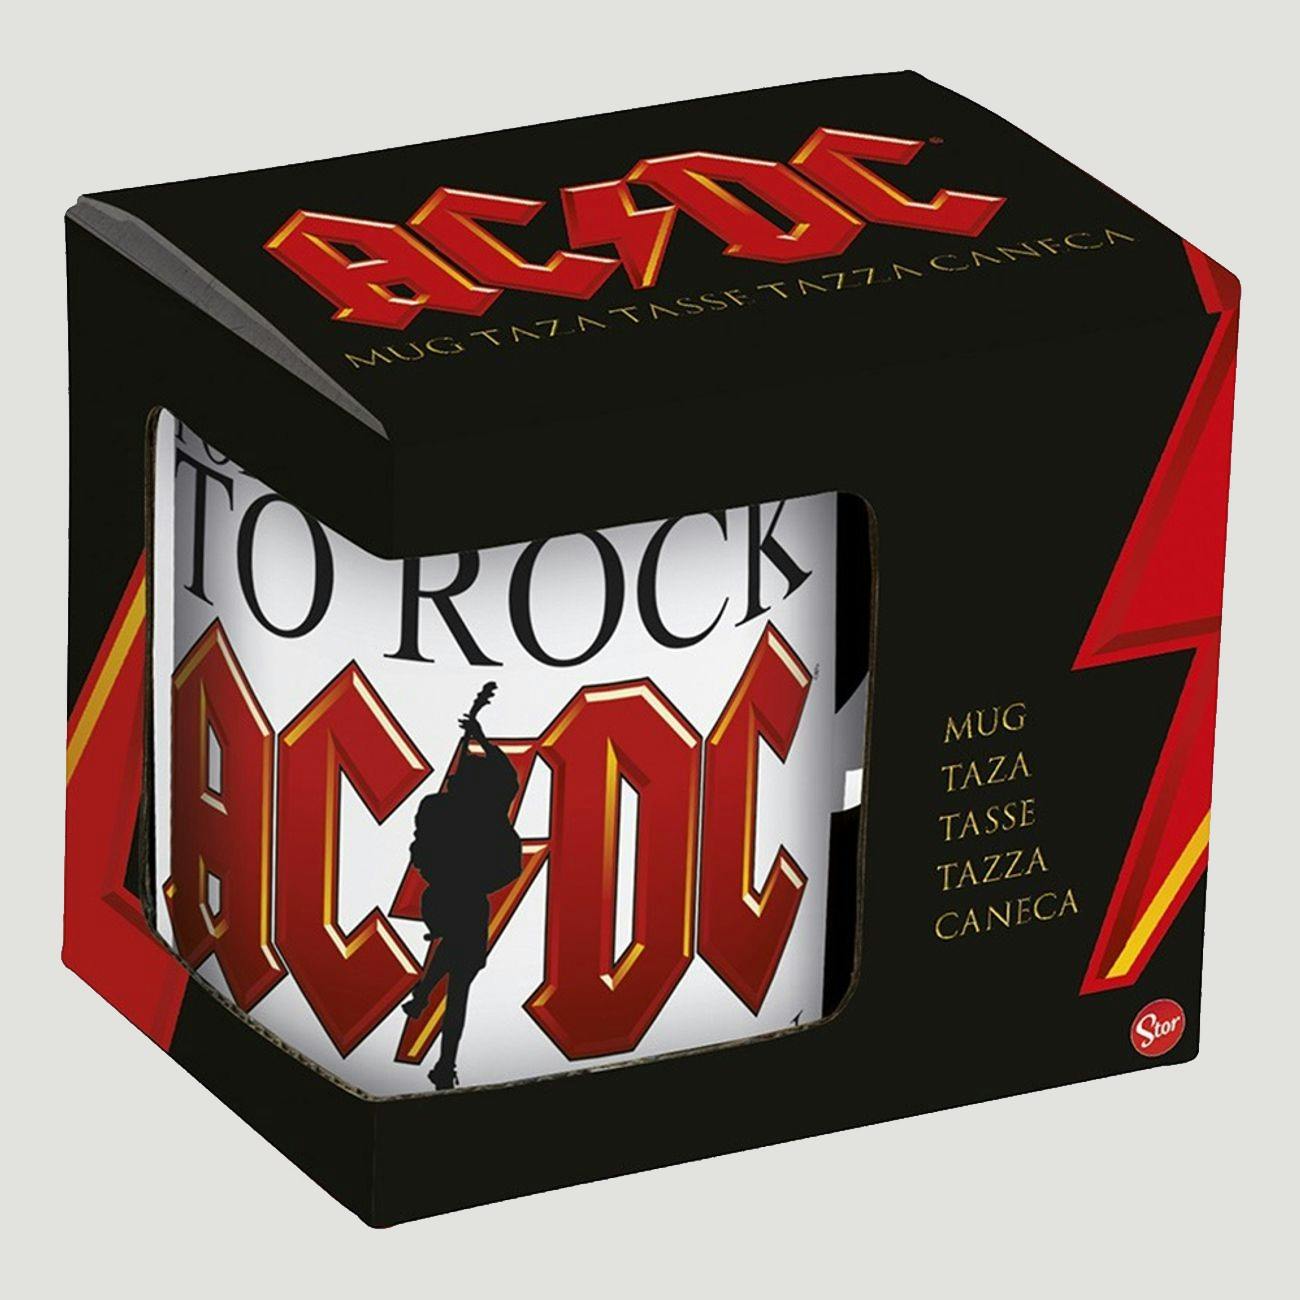 AC/DC krus hvit kopp med logo og teksten «For those about to rock, we salute you».